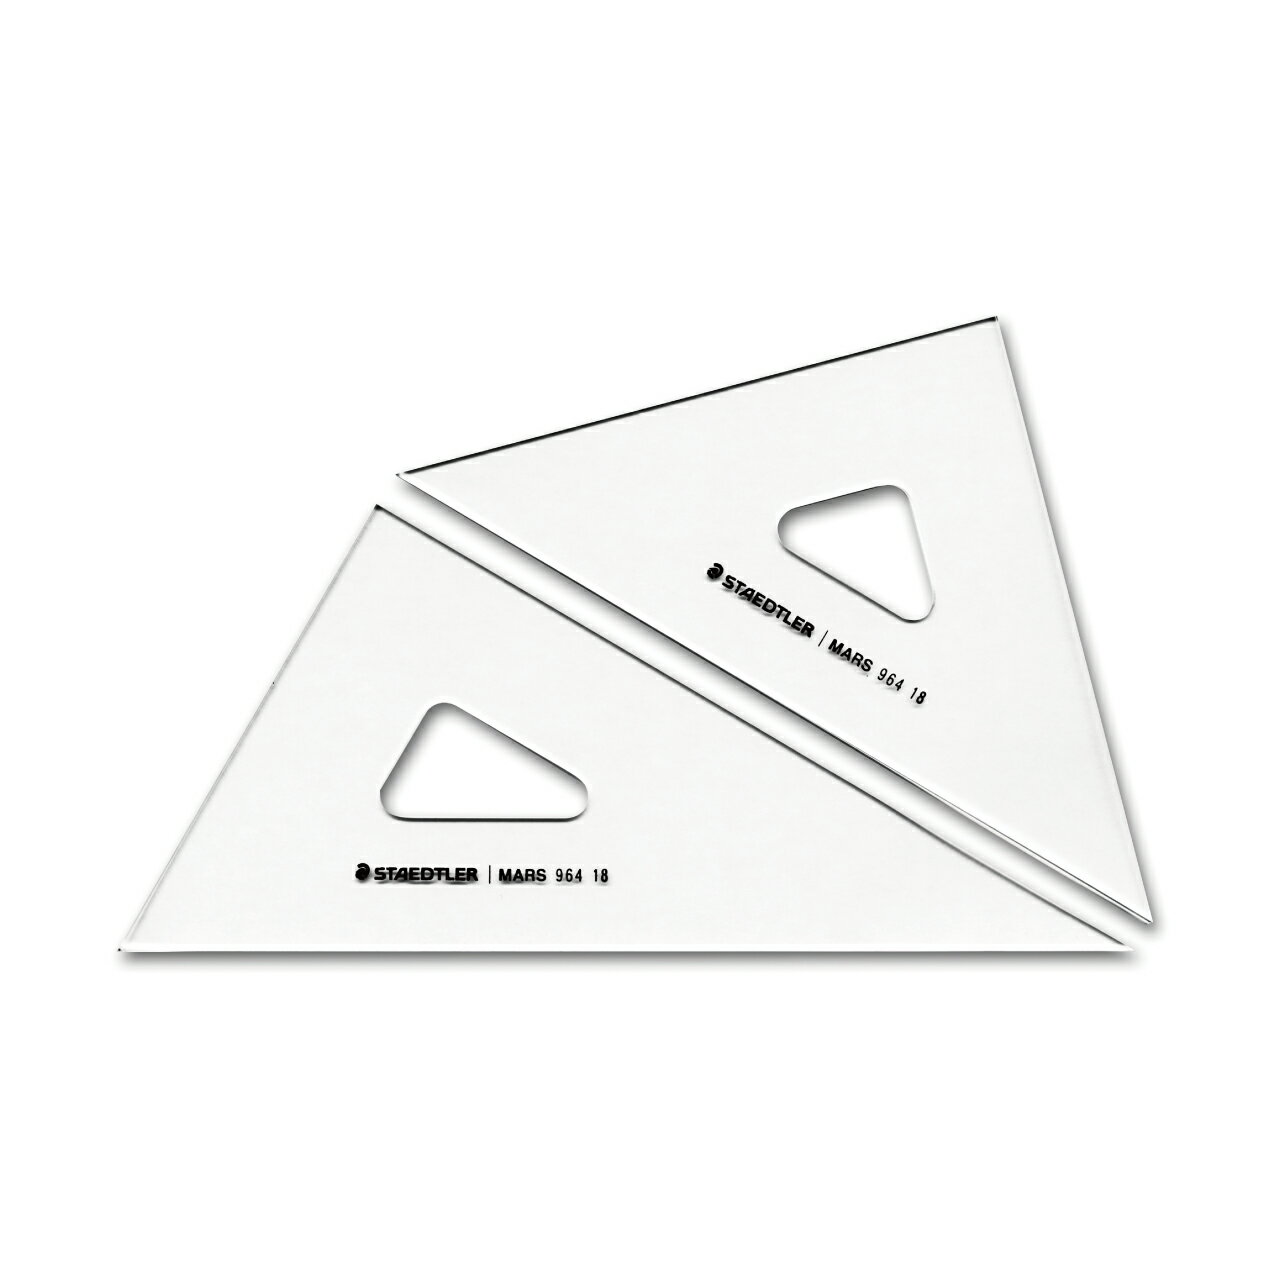 【STAEDTLER/ステッドラー】964 15 マルス三角定規 15cm ゆうパケット(メール便)発送 定規 /三角定規 定規側面に鏡面加工を施してあるので、正確なラインを引くことができます。また、芯粉が出にくいので図面を汚しません。 5